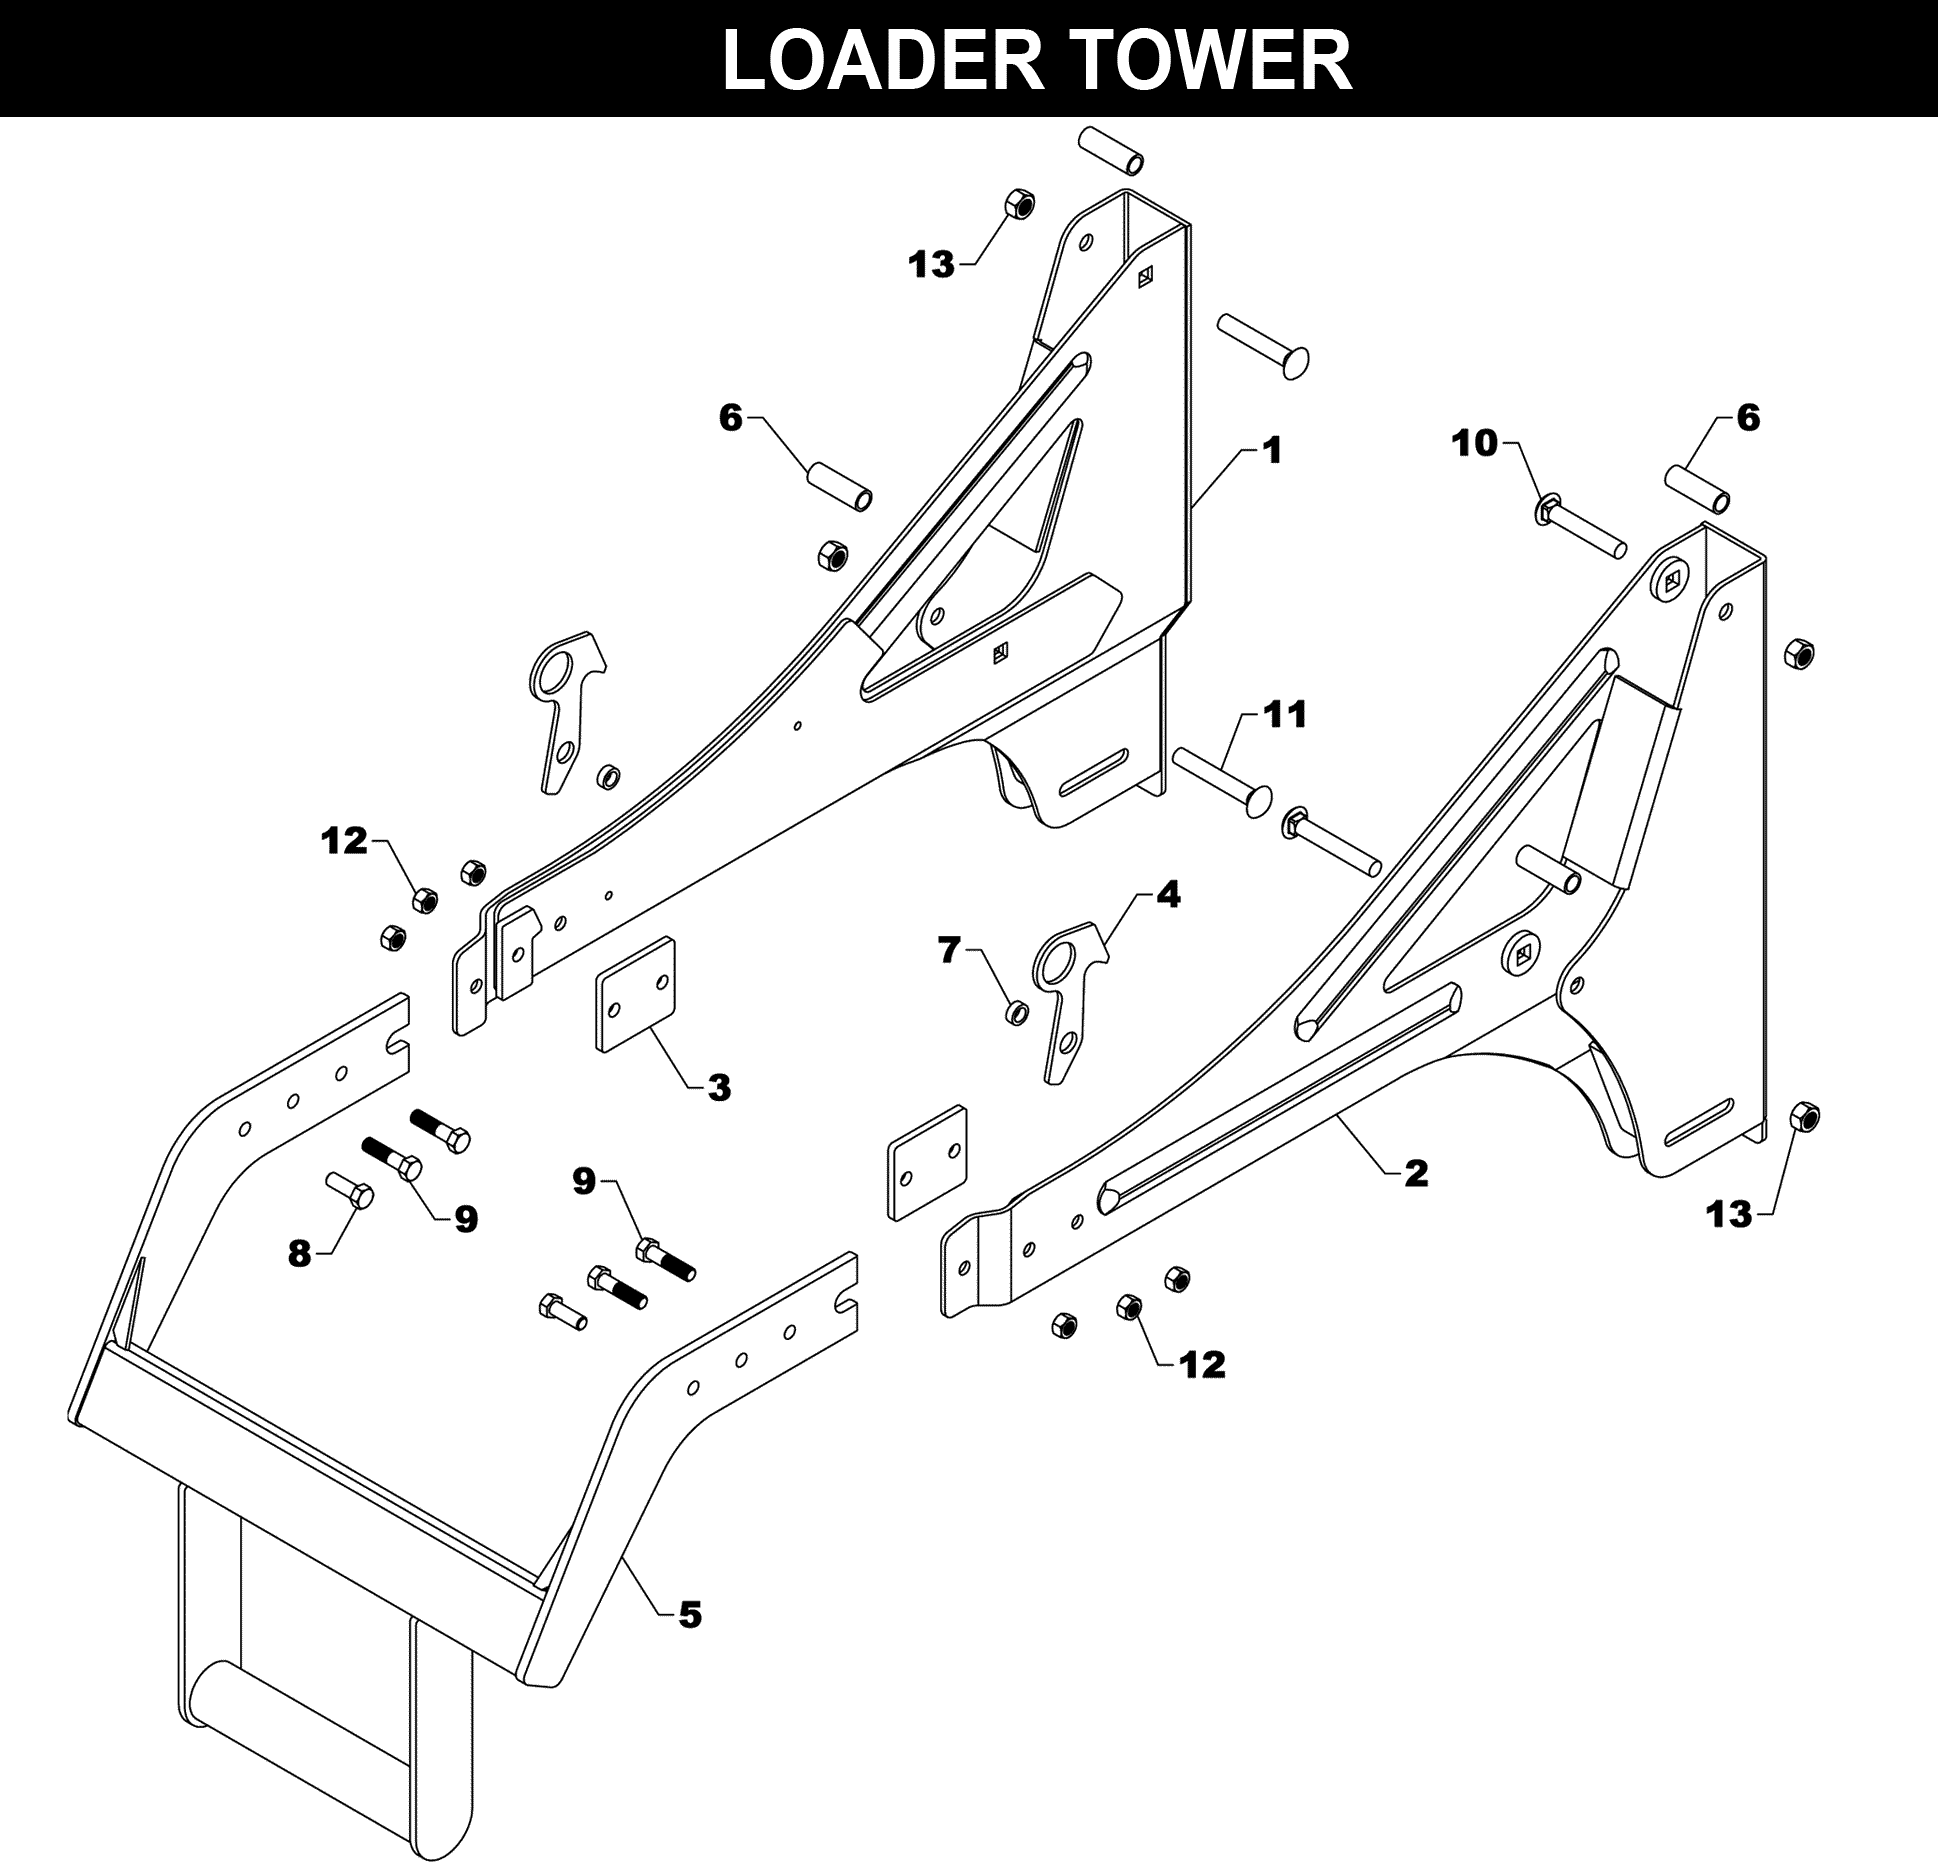 TA-180 • TA-185 Loader Tower